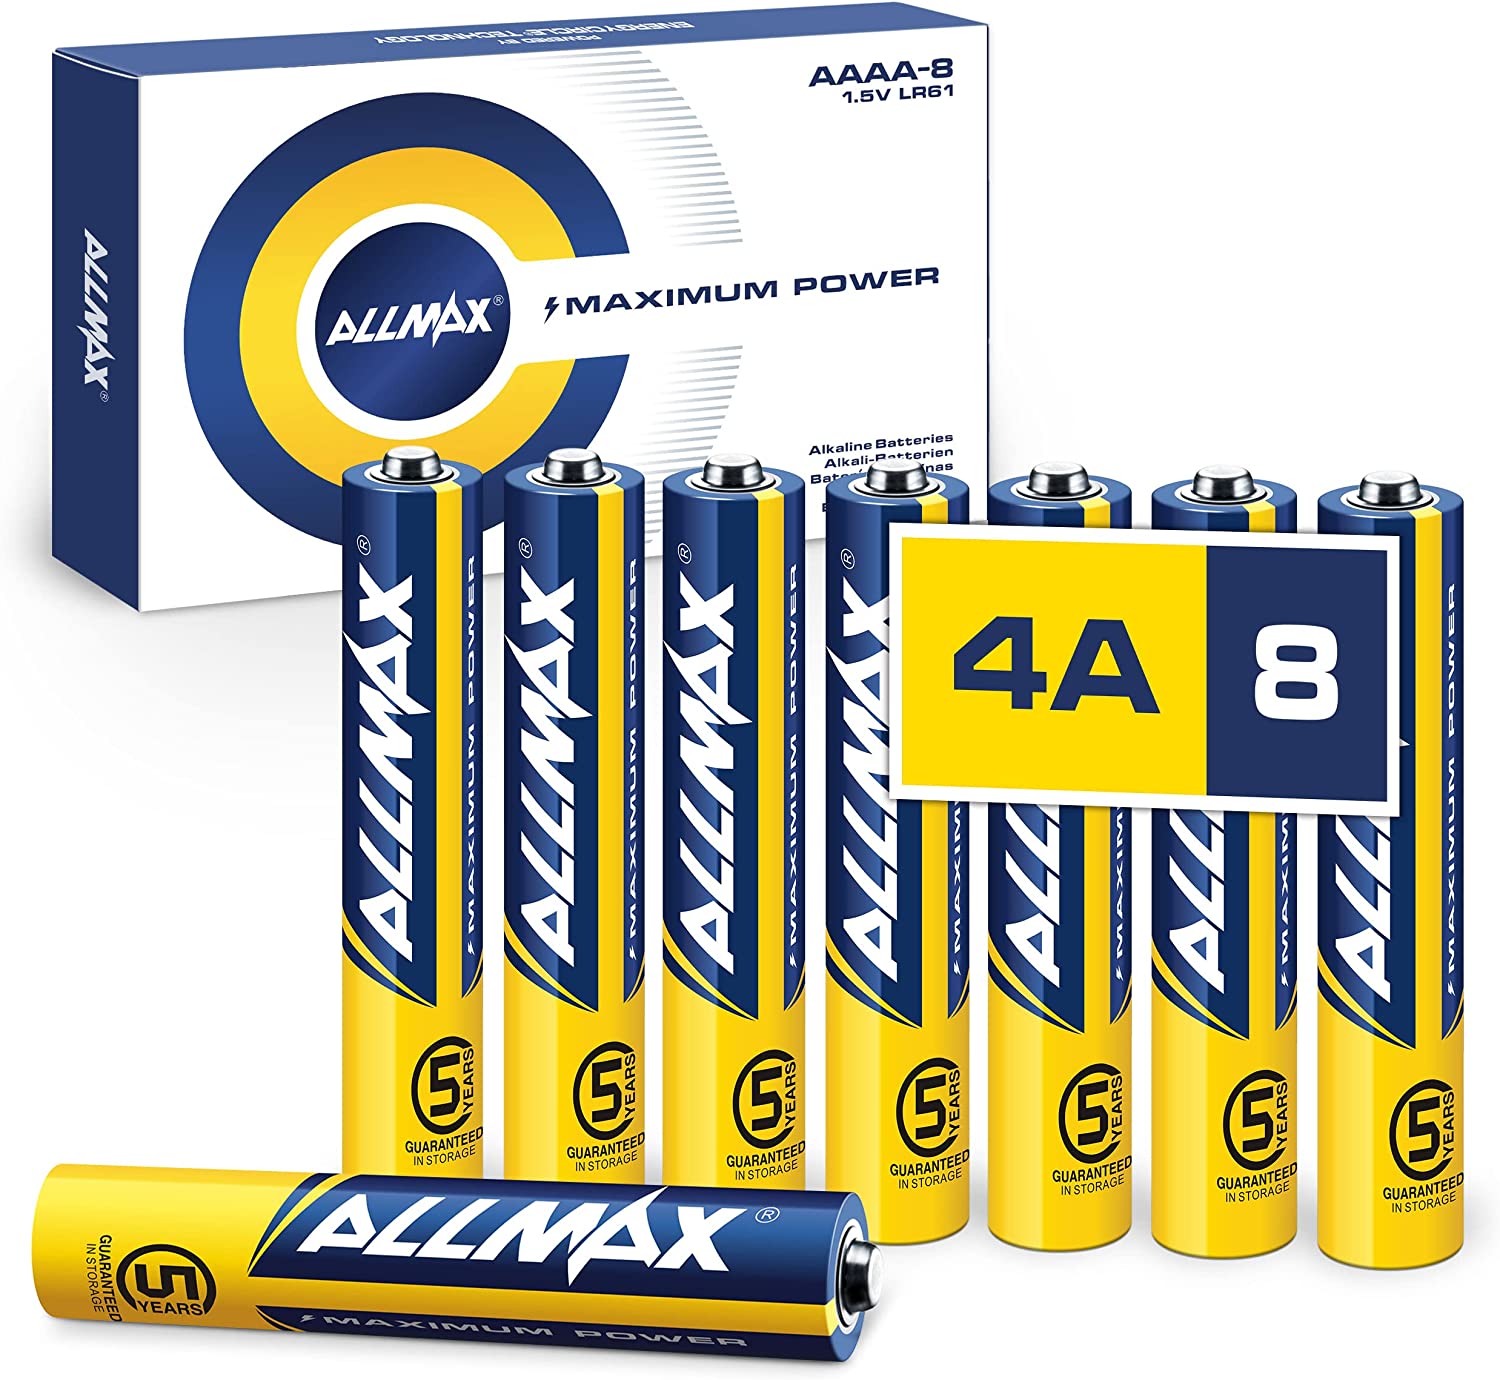 Baterías AAAA de máxima potencia (8 unidades) –